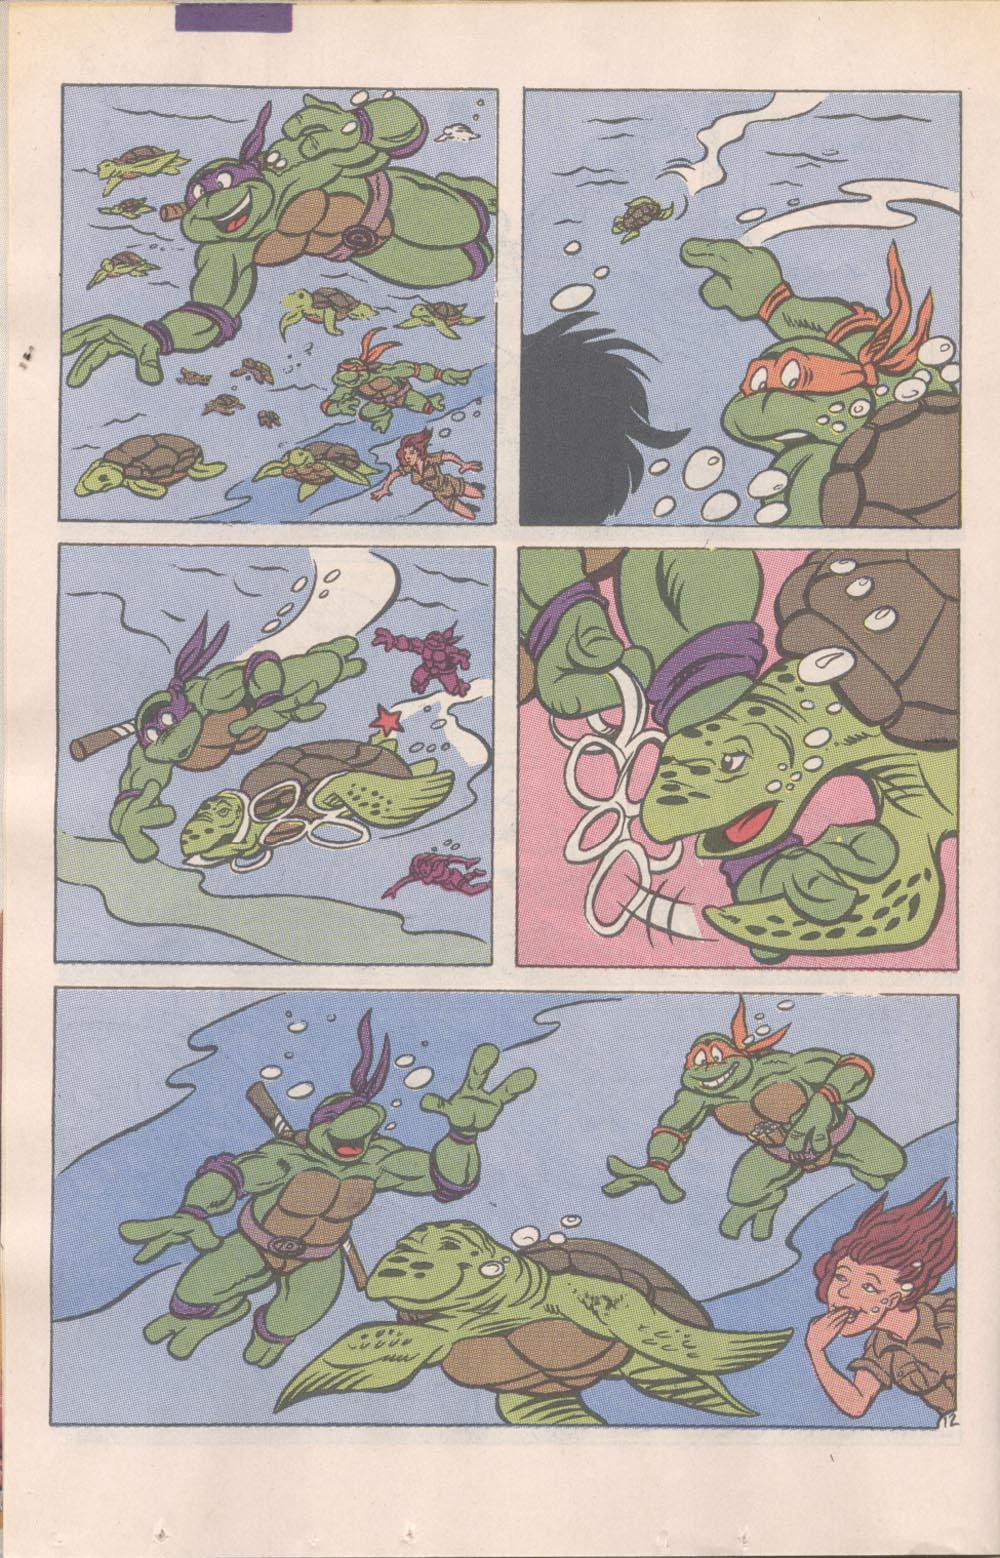 Teenage Mutant Ninja Turtles Adventures (1989) issue 16 - Page 13